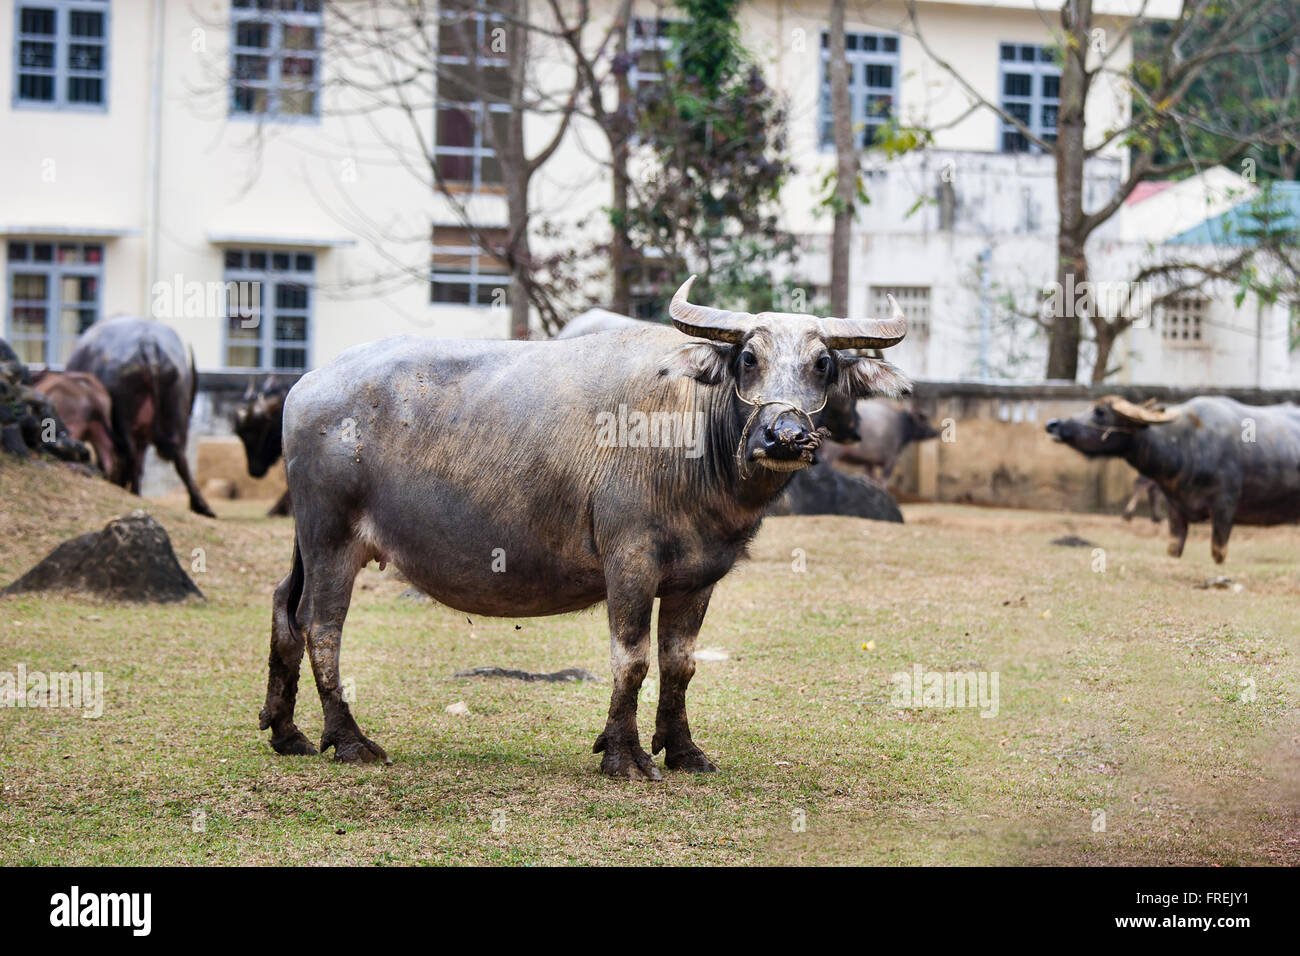 A Big buffalo at Cao Bang province, Vietnam Stock Photo